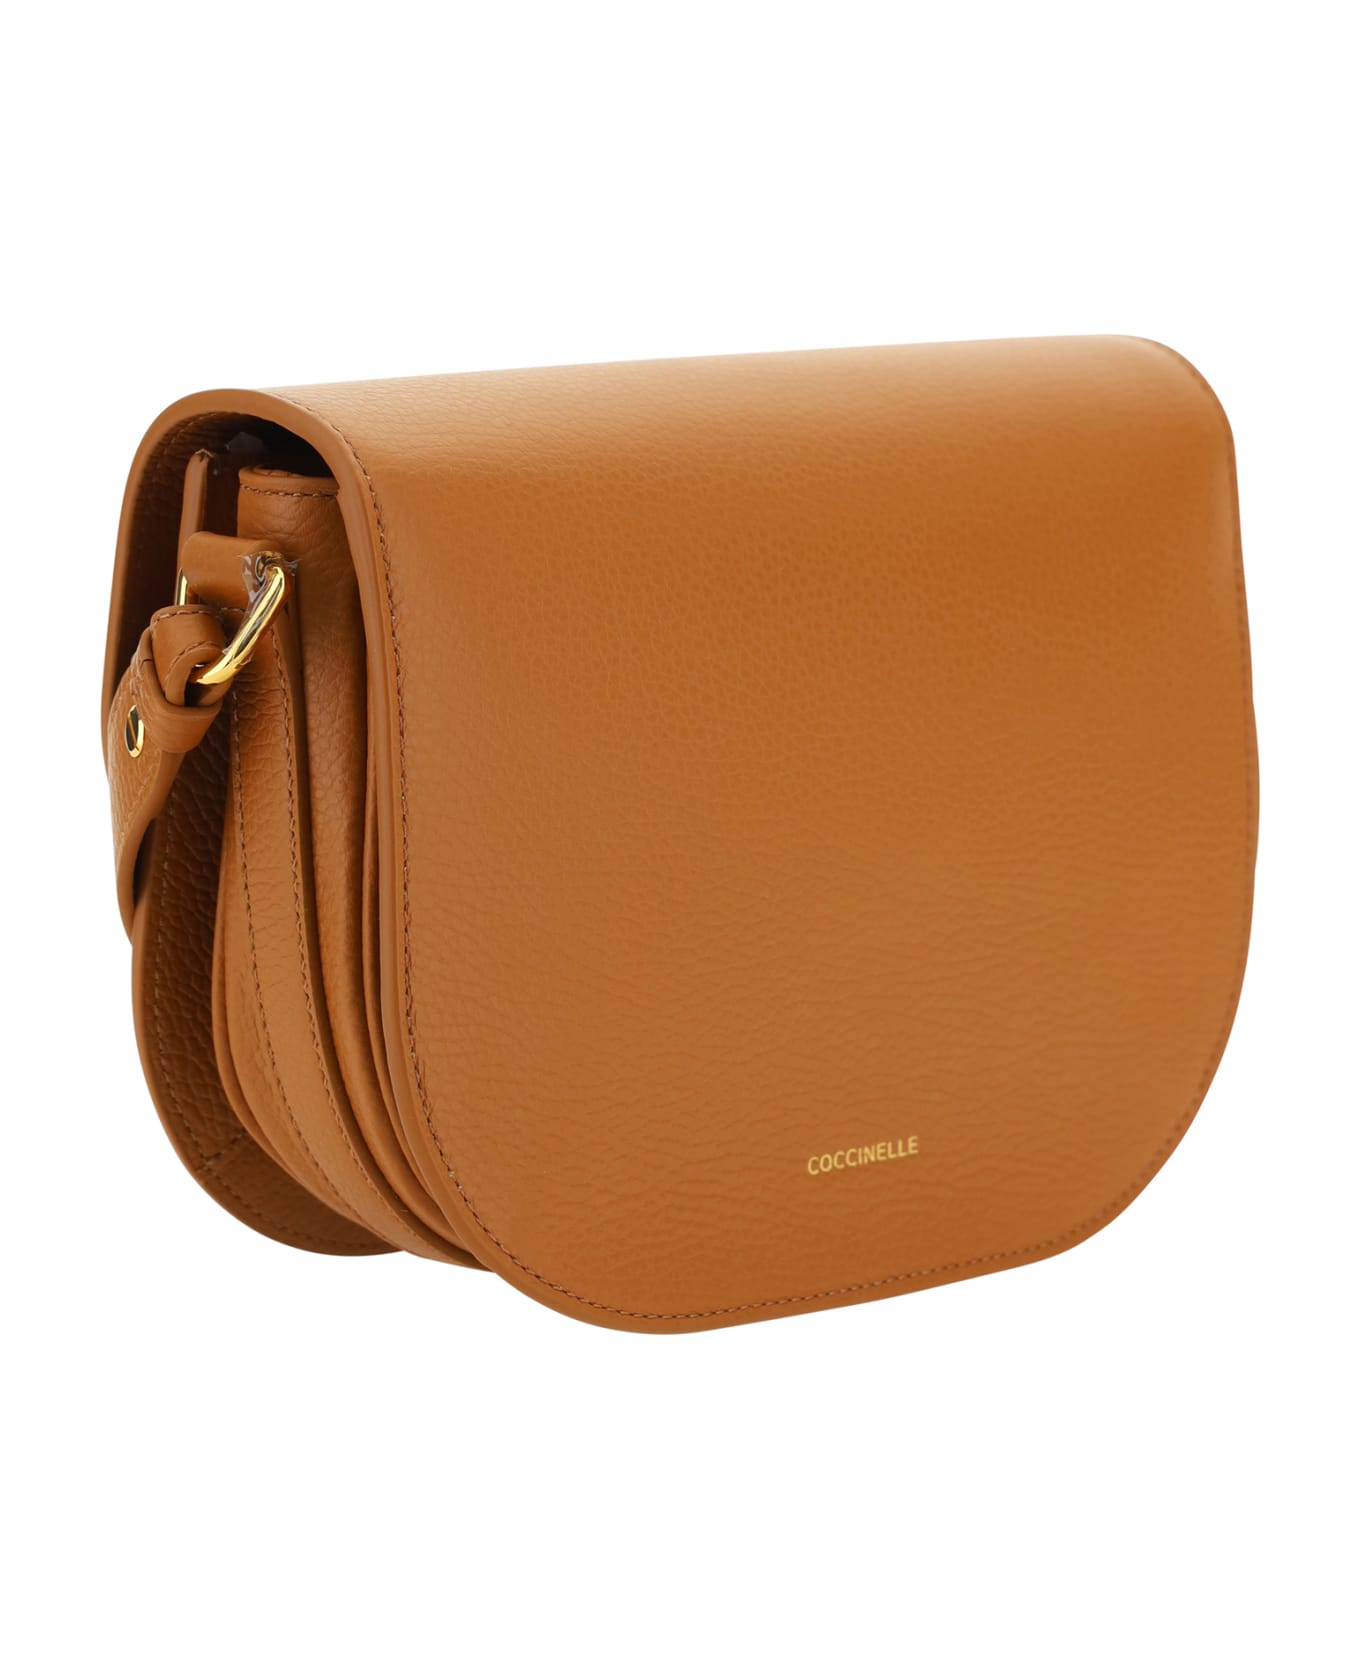 Coccinelle Dew Shoulder Bag - Leather